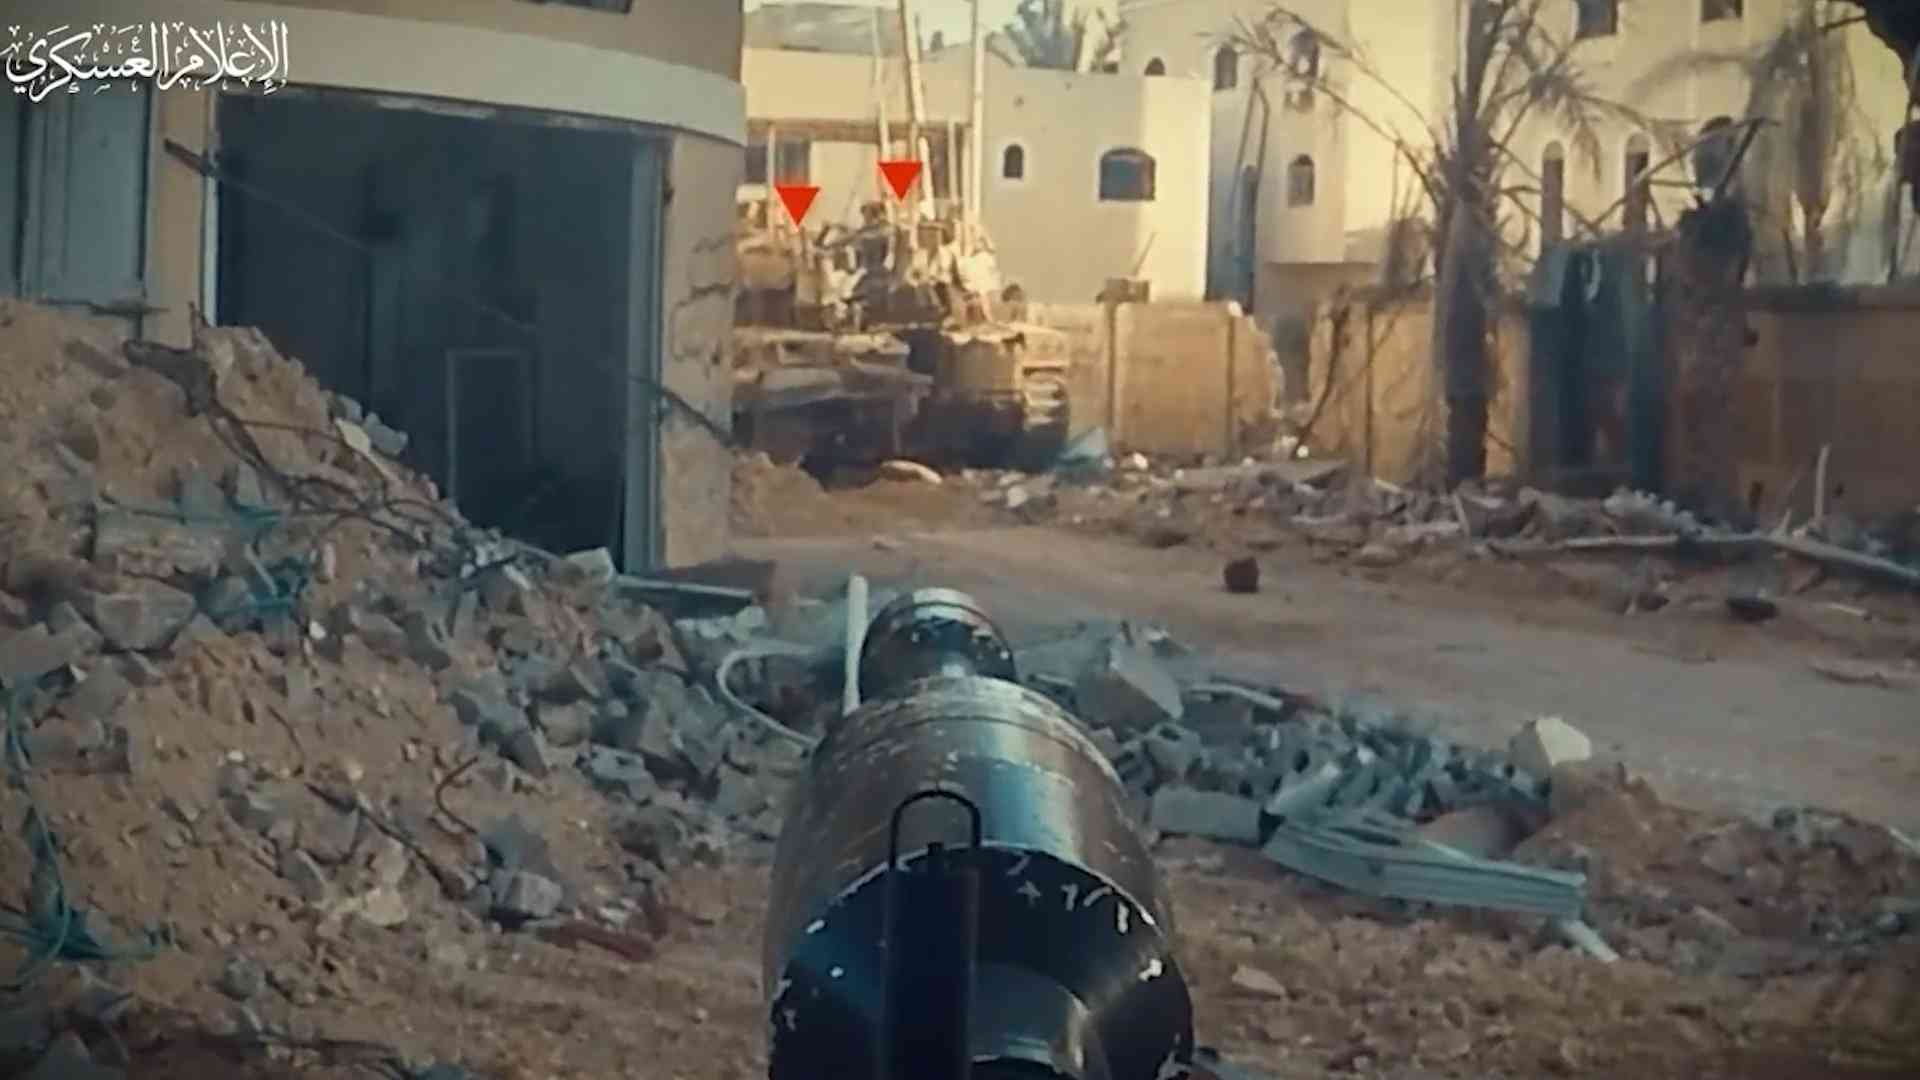 17 دبابة حتى الساعة 9.. القسام تصحو مبكرا للعمل (فيديو)